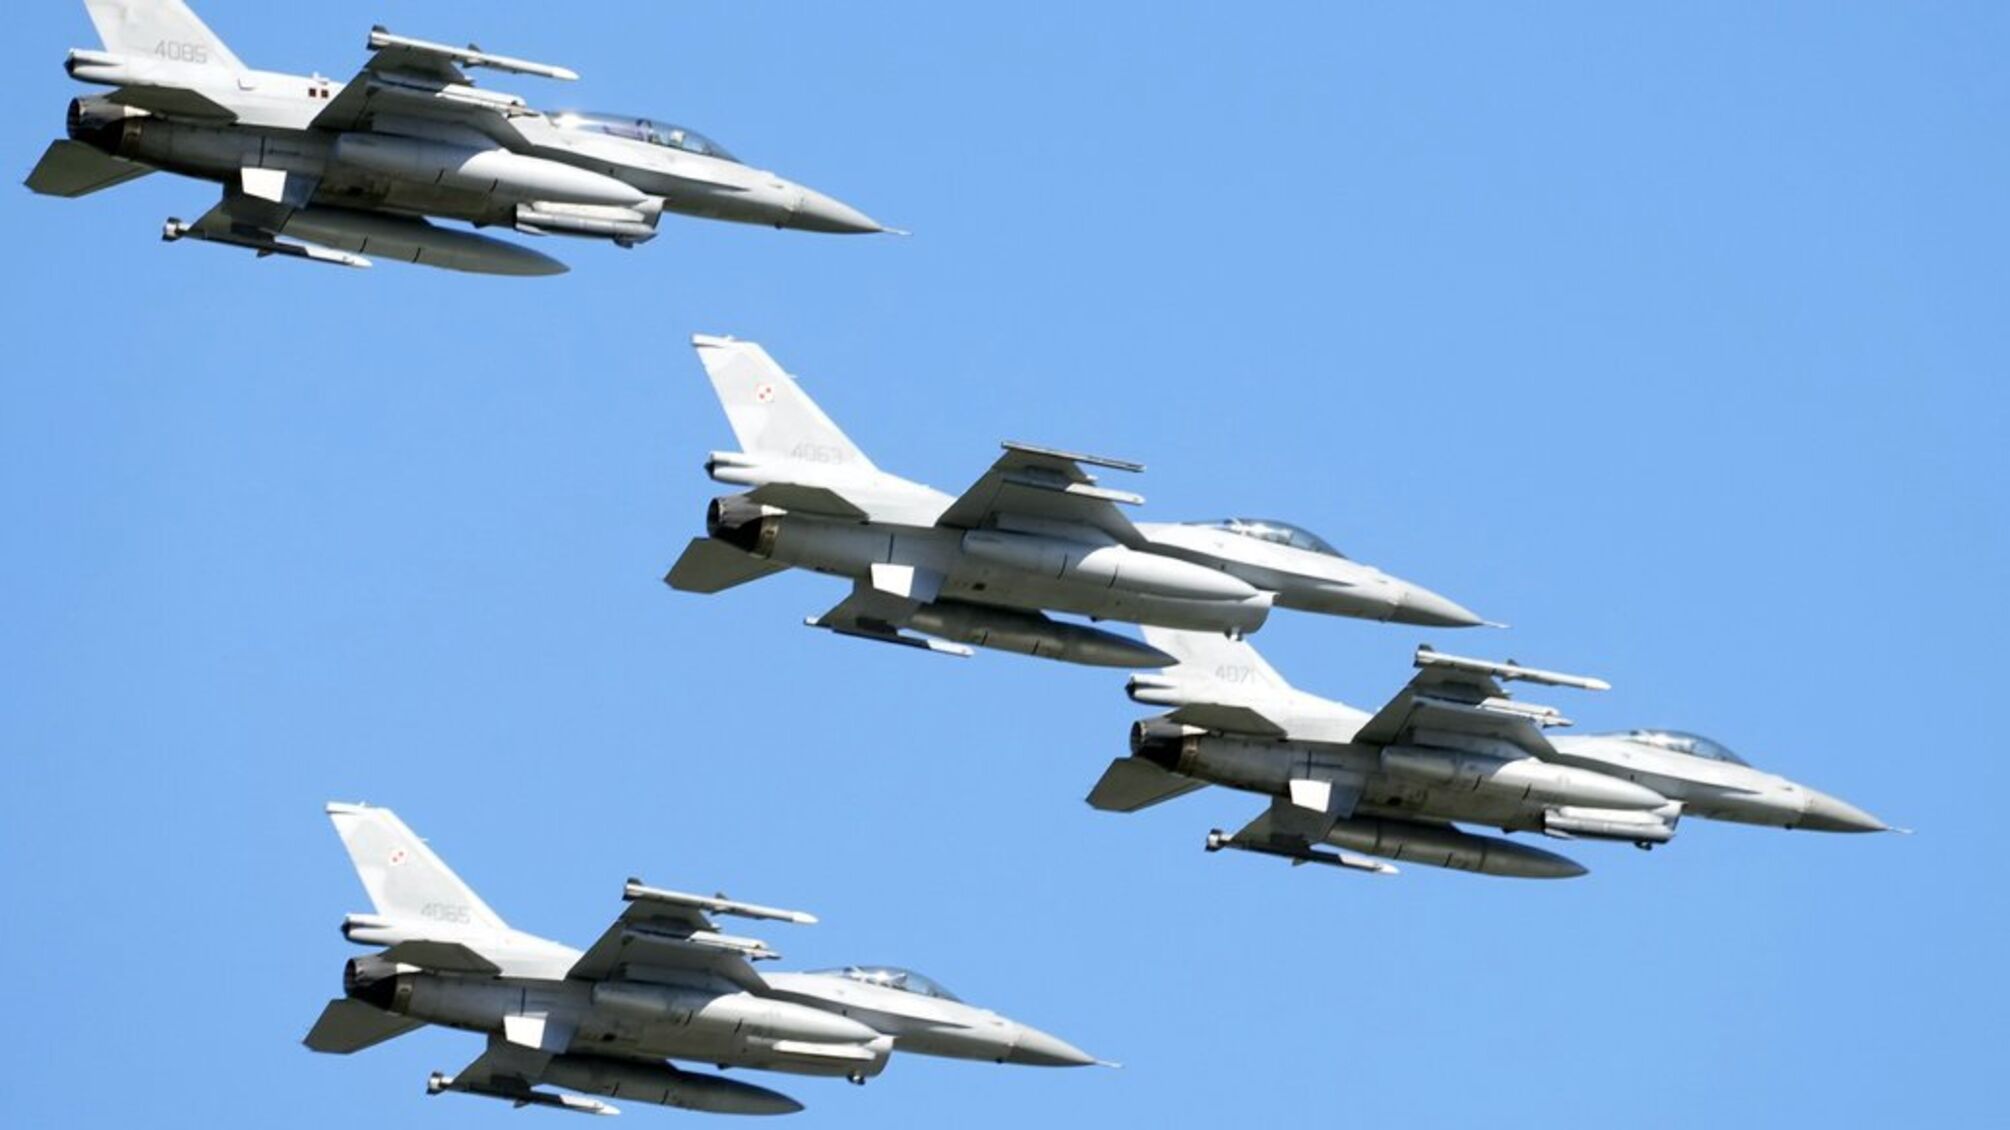 Бельгия поставит 30 истребителей F-16 в Украину к 2028 году